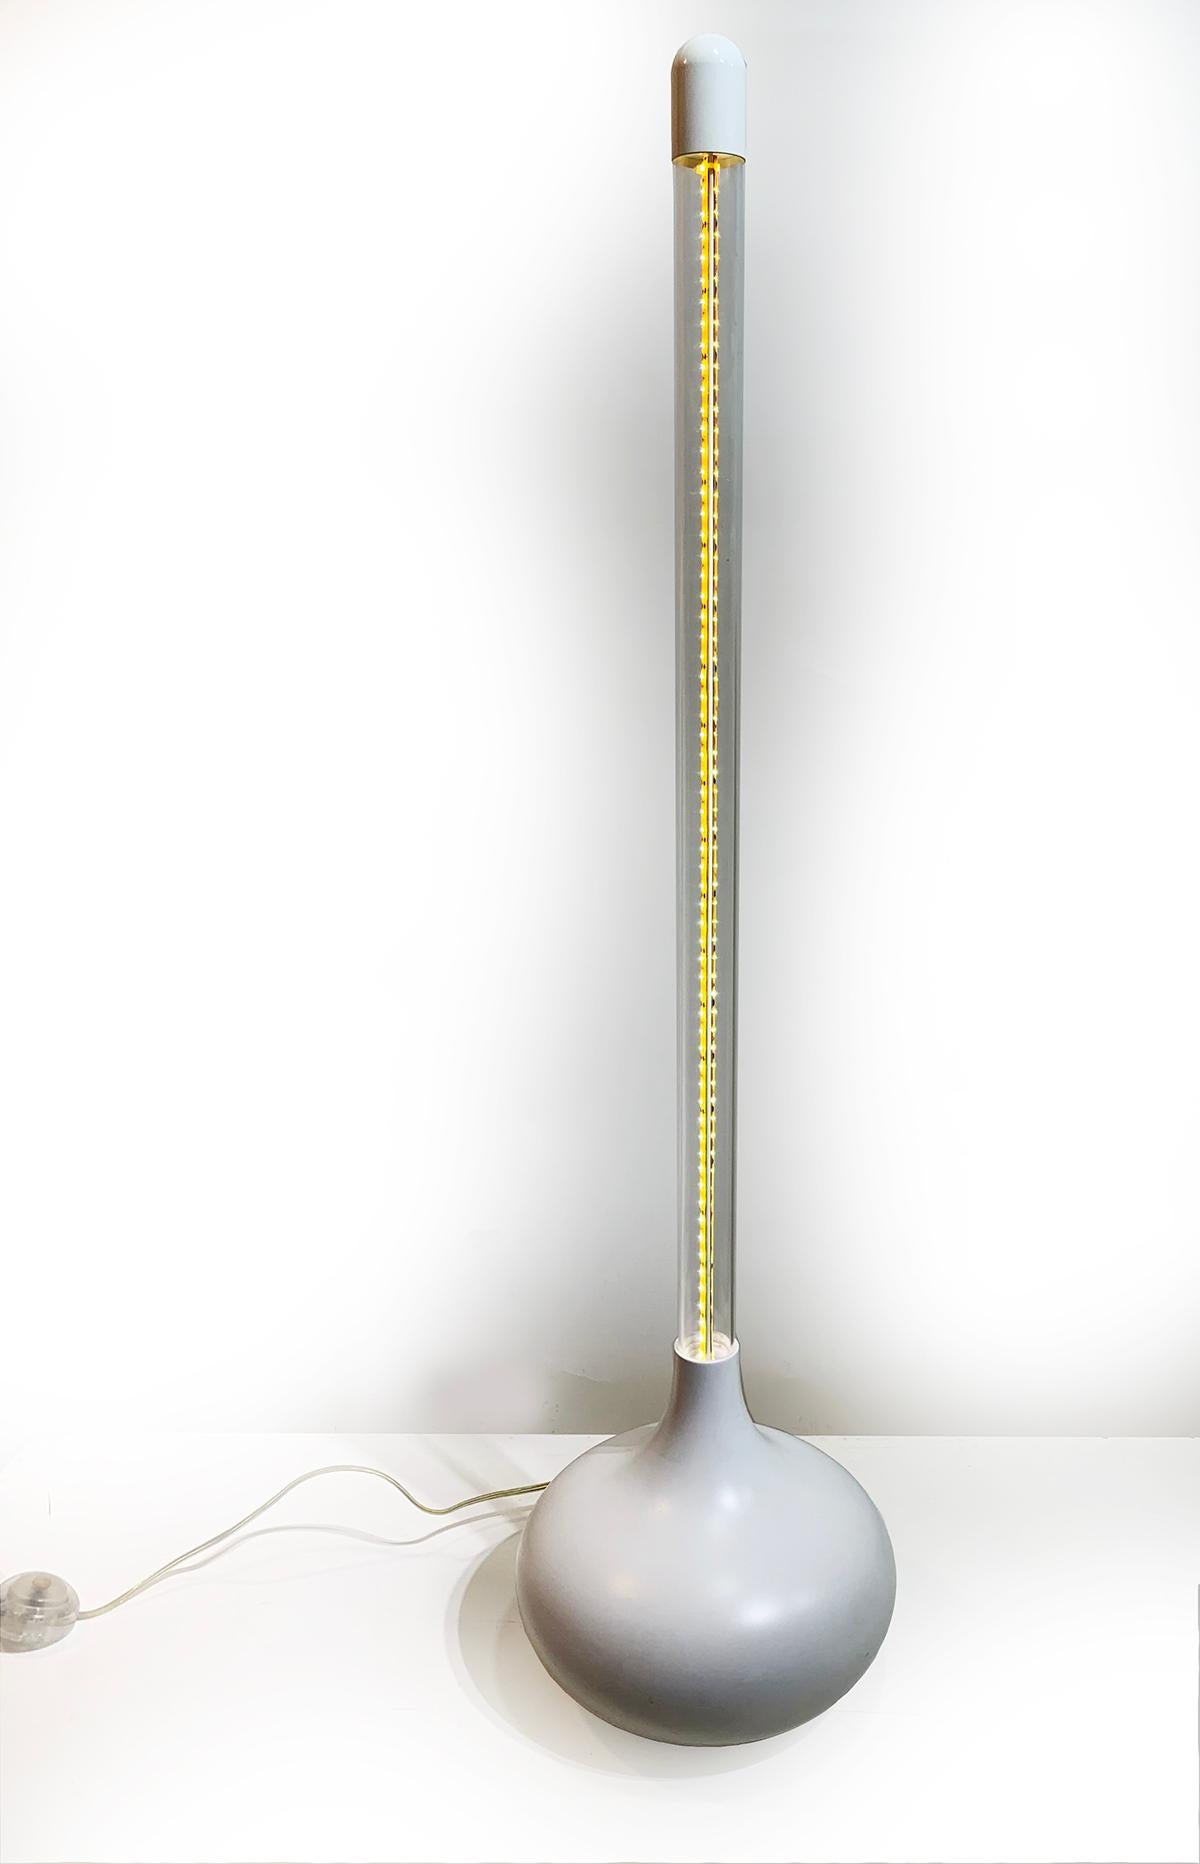 L'esthétique de l'équilibre, les bien nommées lampes Culbuto jouent avec l'idée d'équilibre.
Conçu par une jeune agence française 